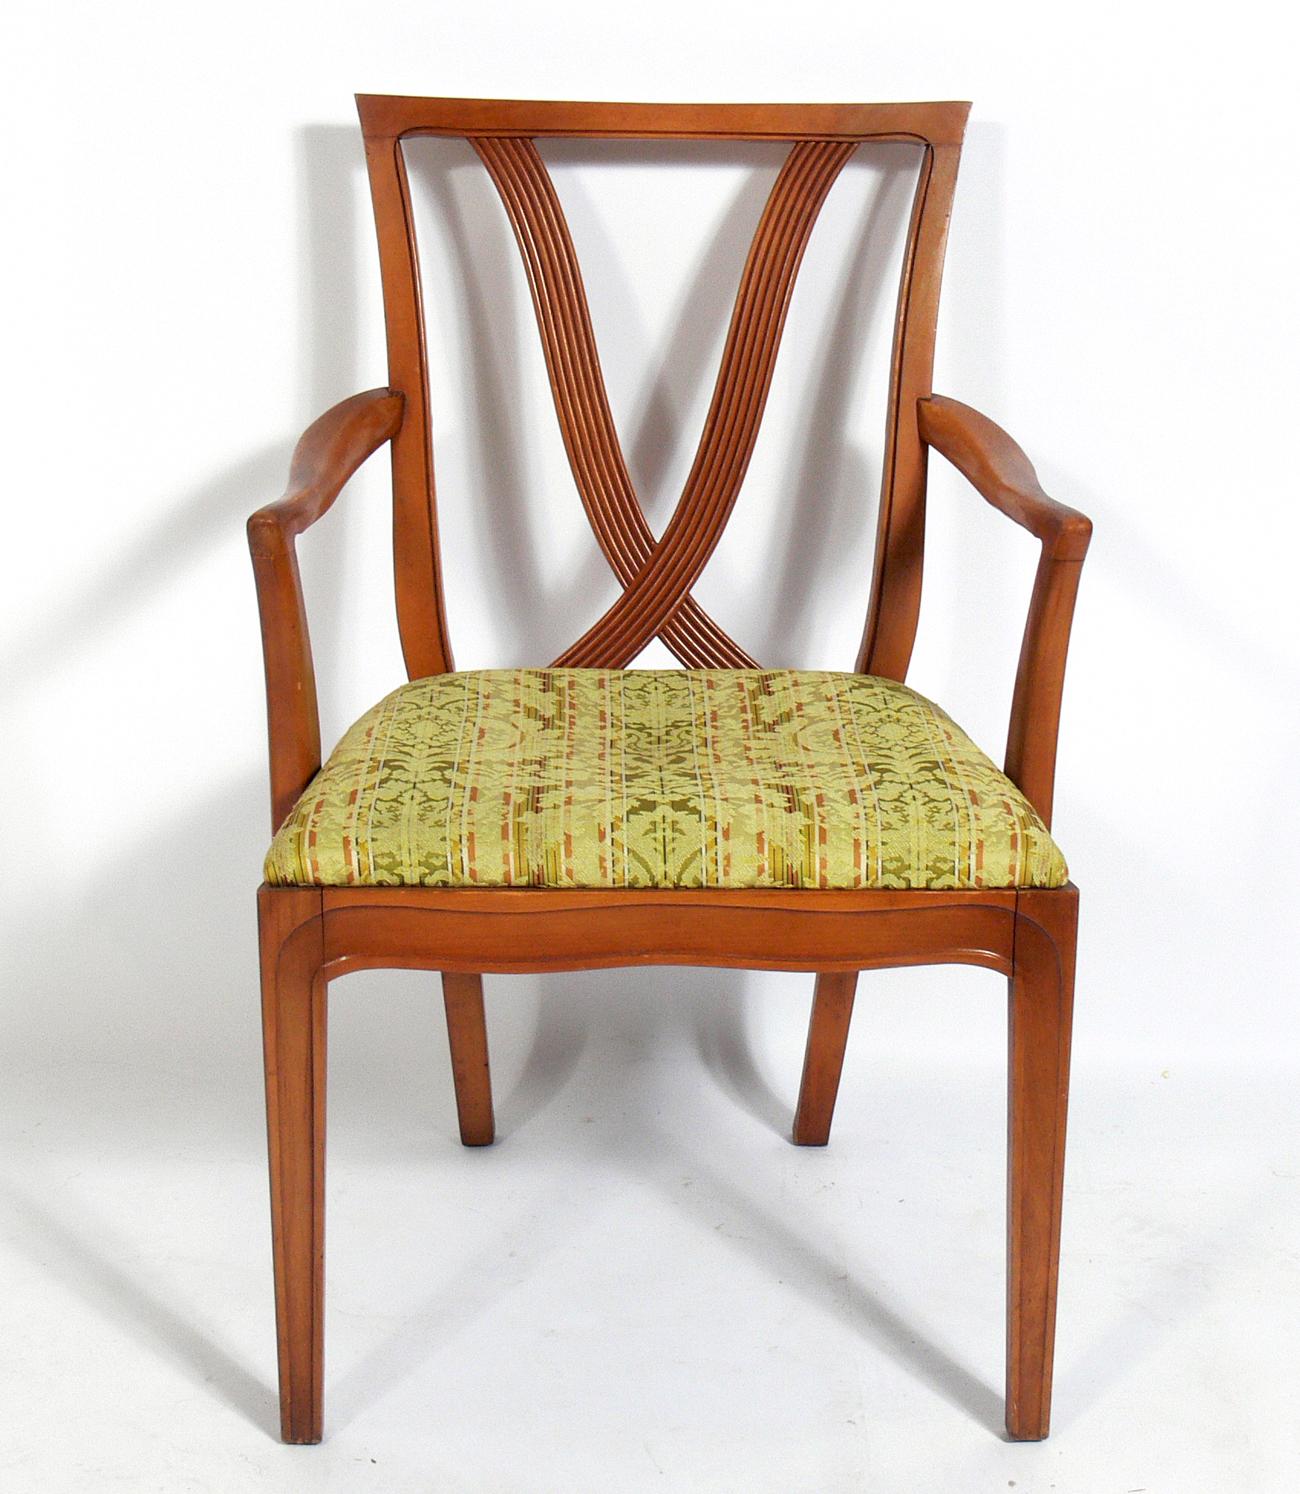 Glamouröse Esszimmerstühle mit X-Rückenlehne, entworfen von Tomlinson, Amerikaner, um 1950. Diese Stühle werden derzeit aufgearbeitet und neu gepolstert und können in der von Ihnen gewünschten Farbe und dem von Ihnen gewünschten Stoff fertiggestellt